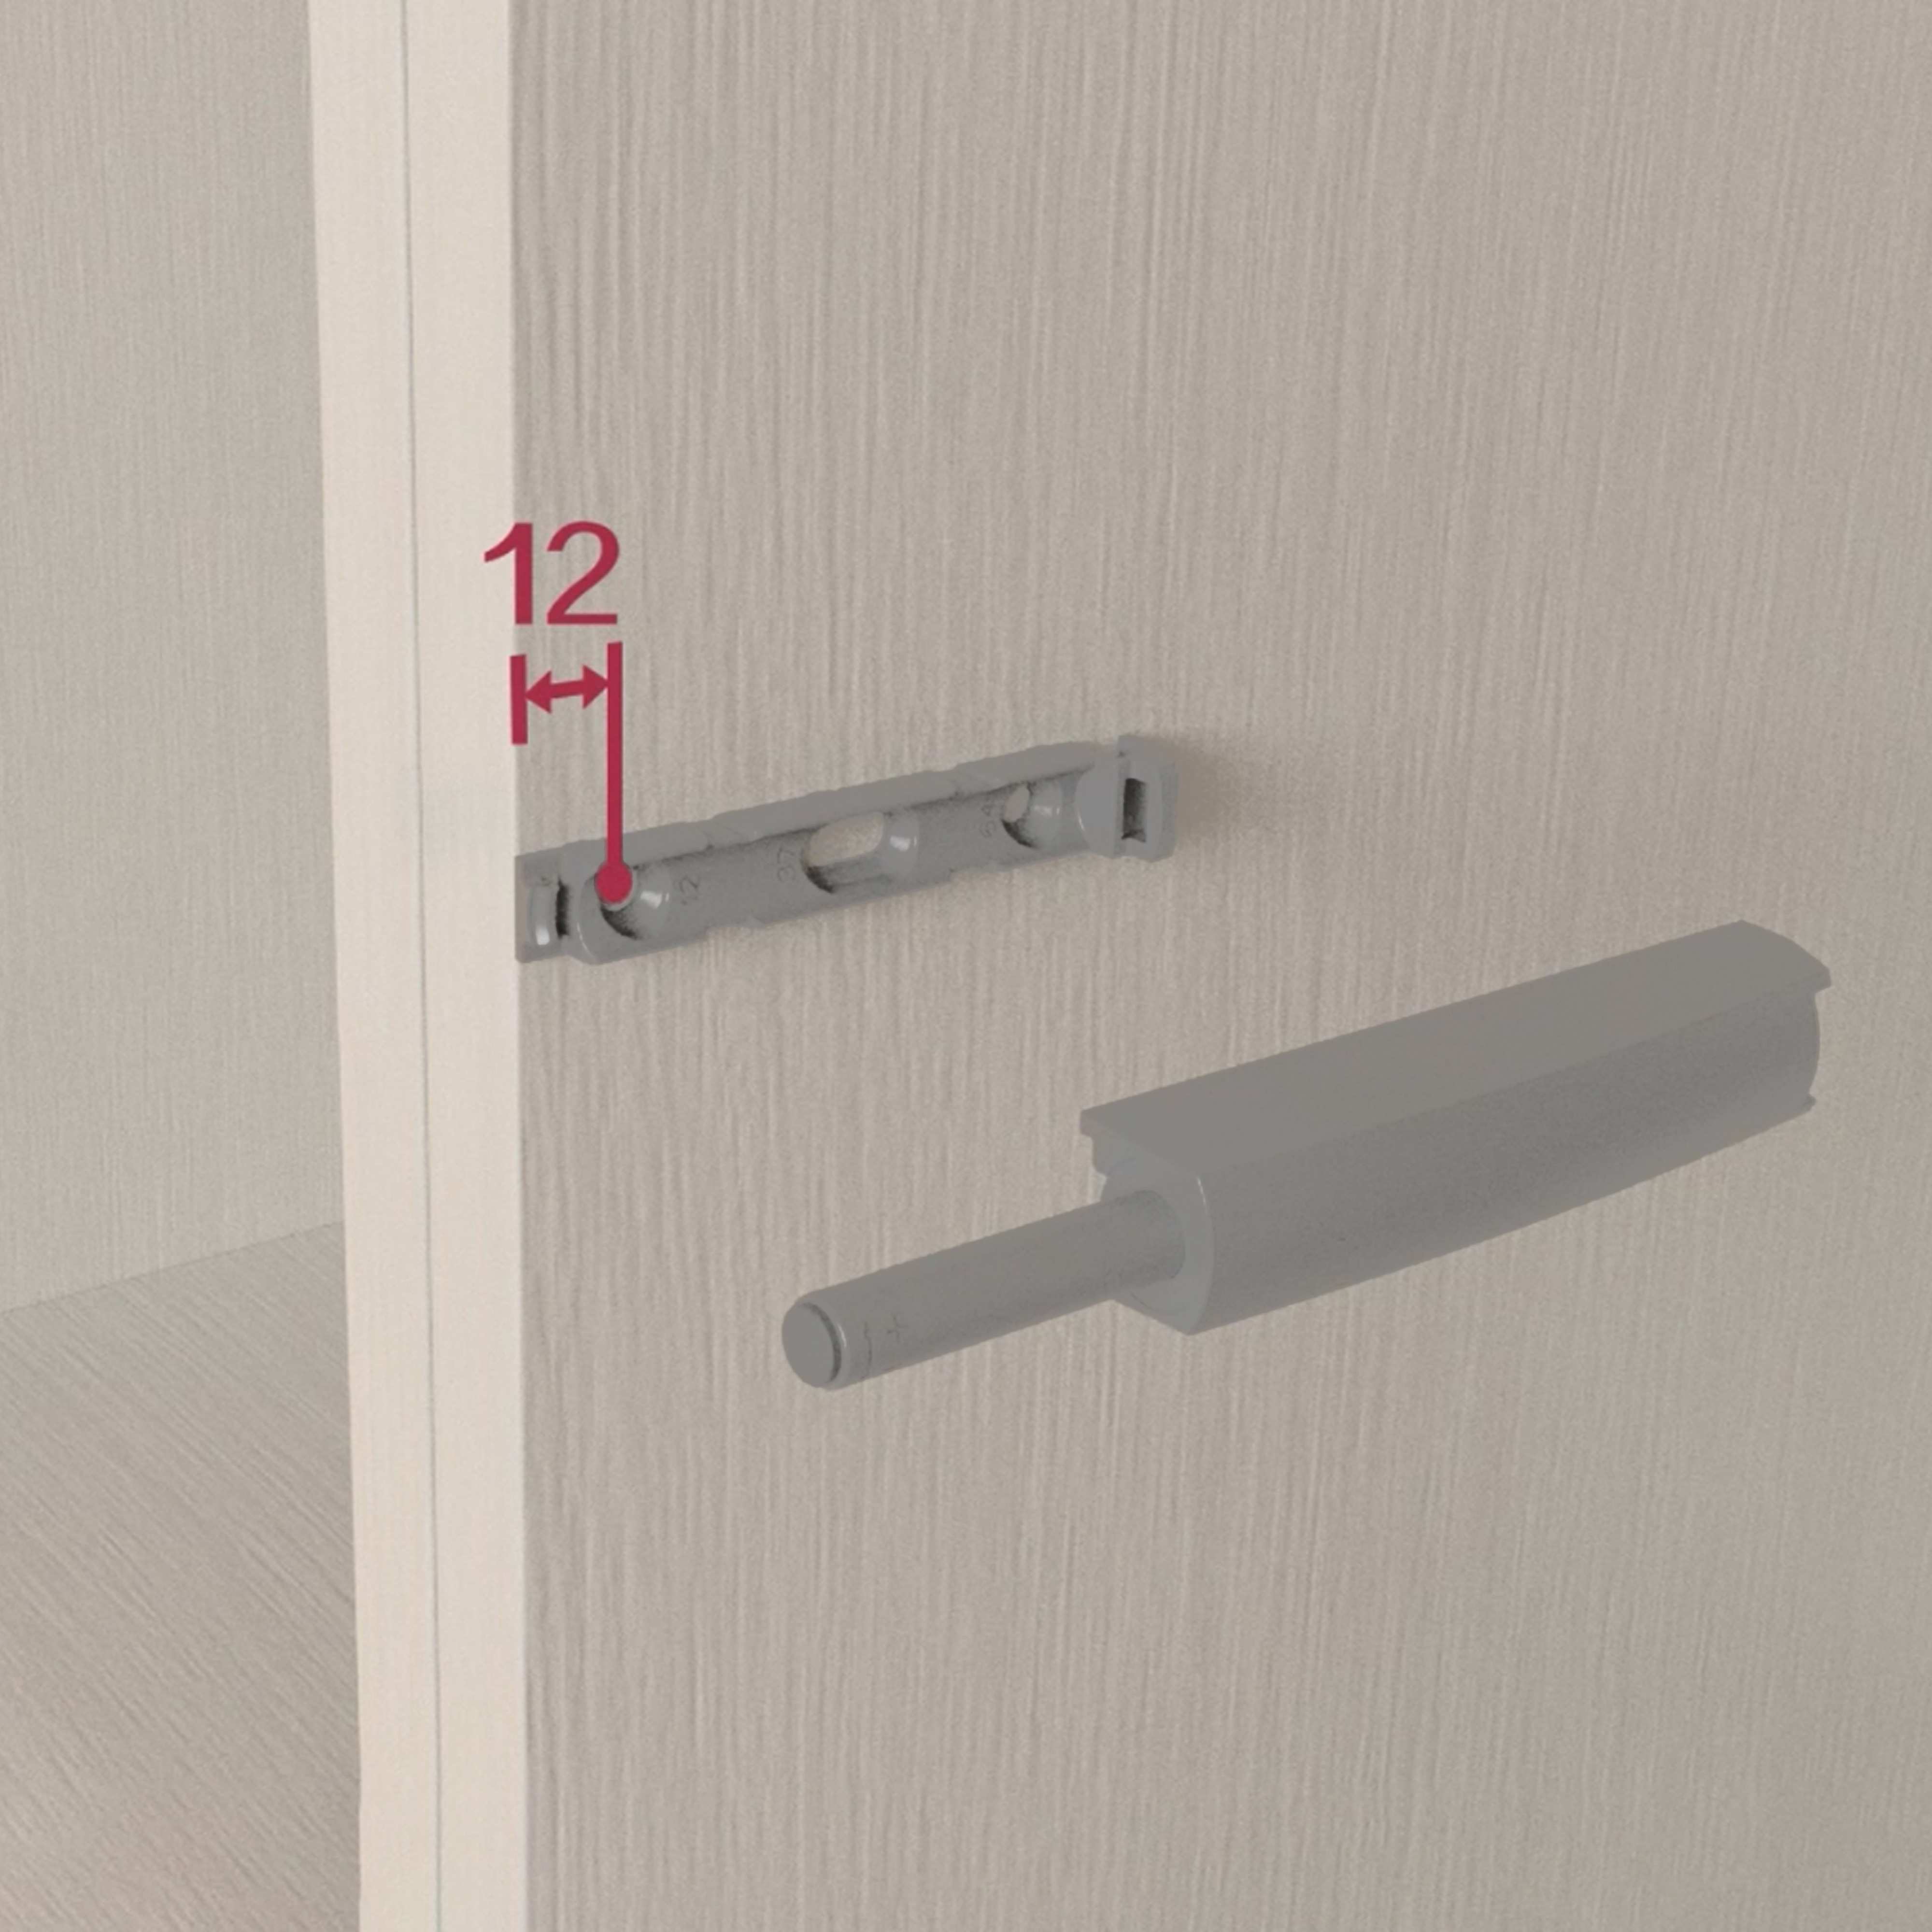 2 amortiguadores de puerta de cierre suave con placa de montaje lineal.  Para muebles atornillados - compuertas para muebles, cierre suave,  compuertas